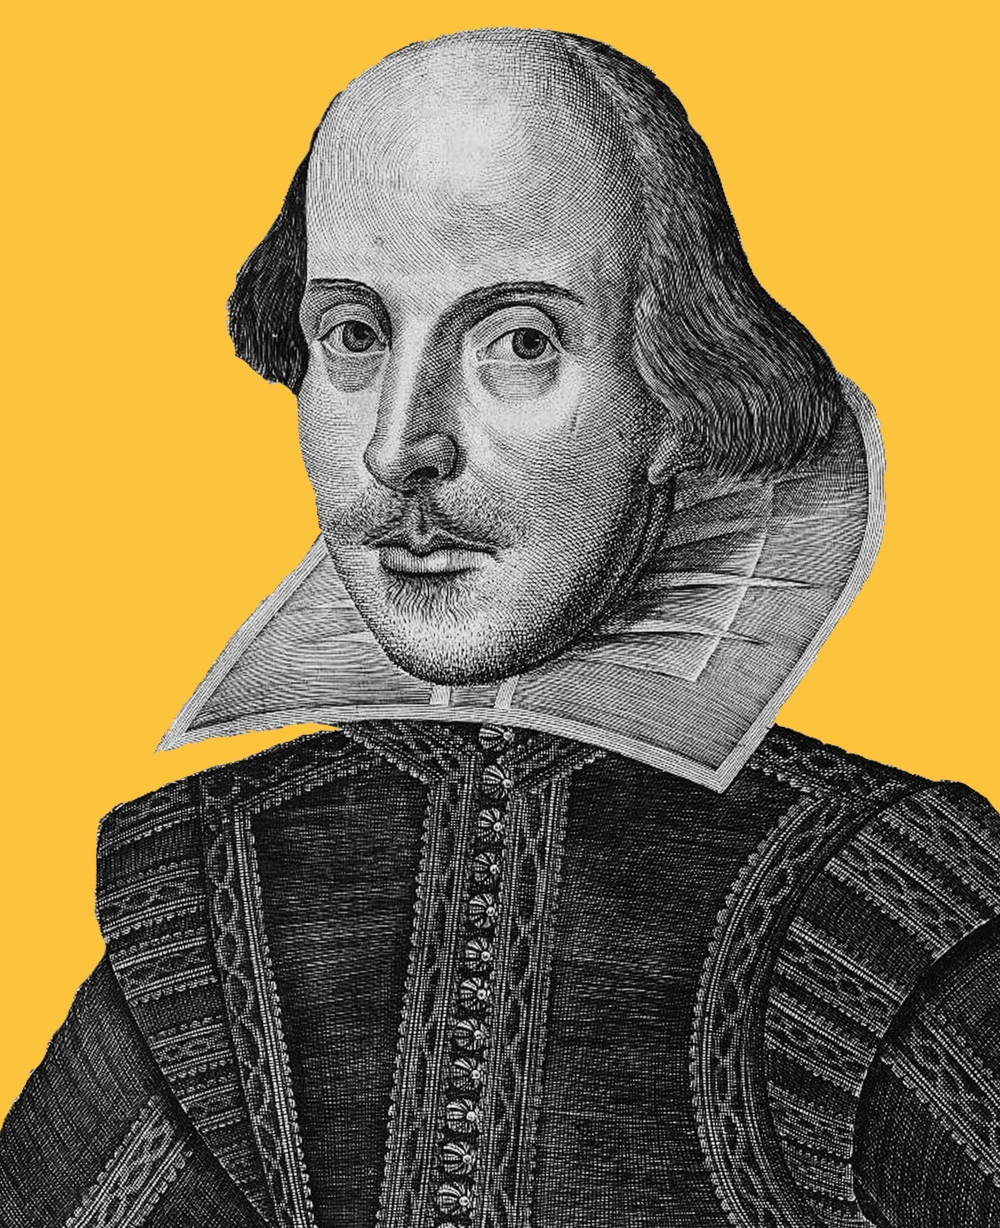 Shakespeare's world